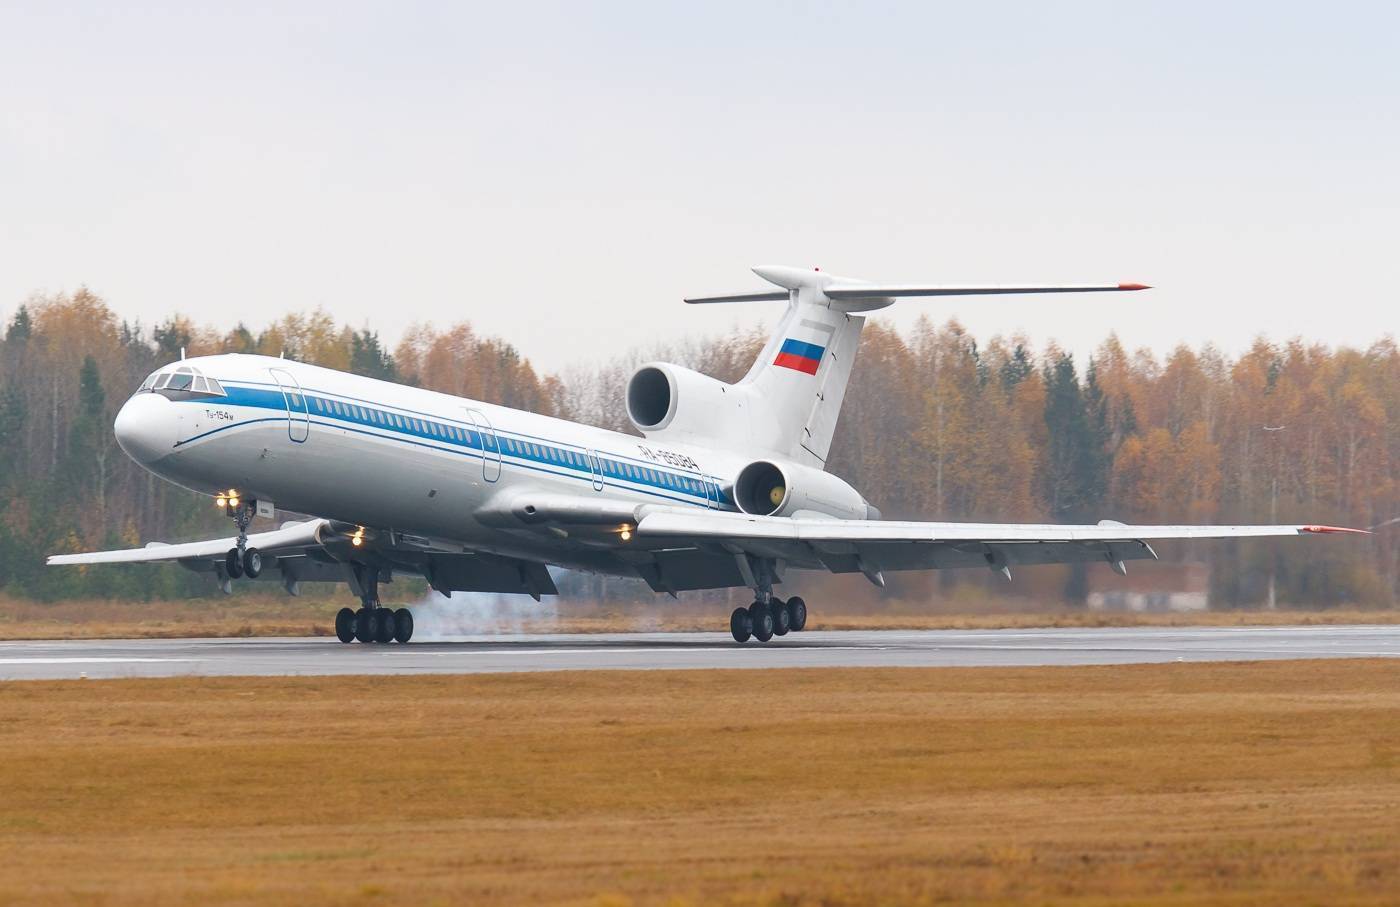 Пассажирский самолет ту-154. досье